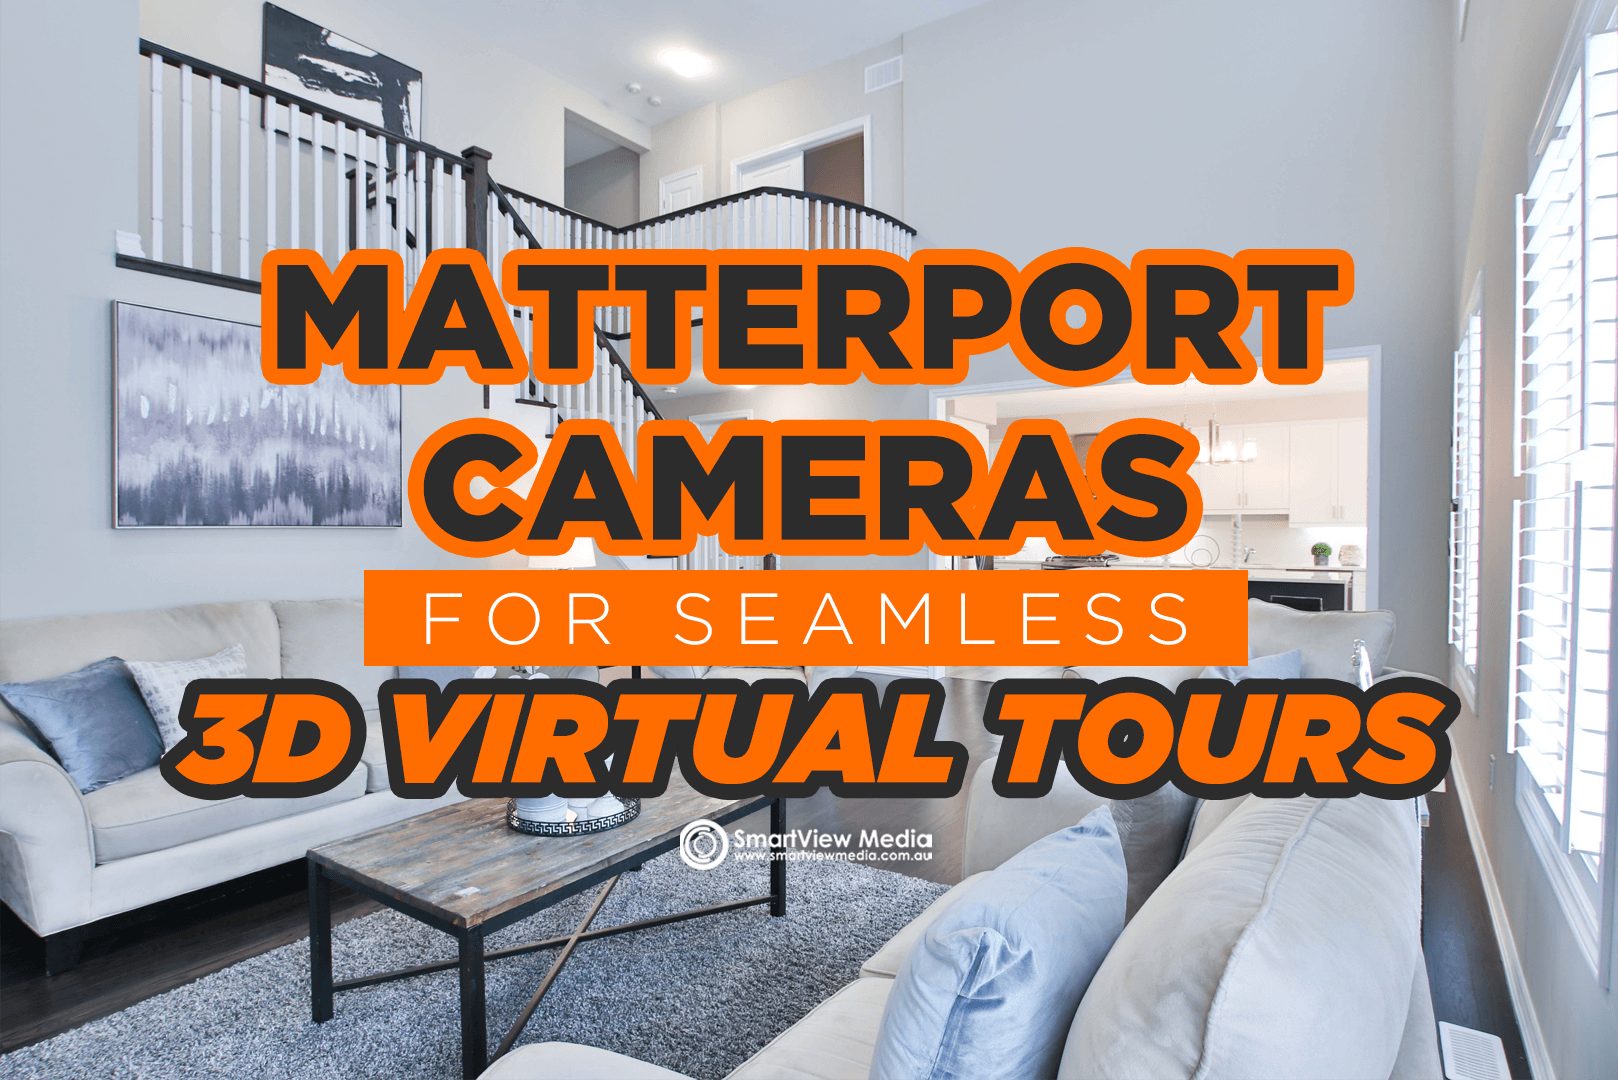 Matterport Cameras for Seamless 3D Virtual Tours